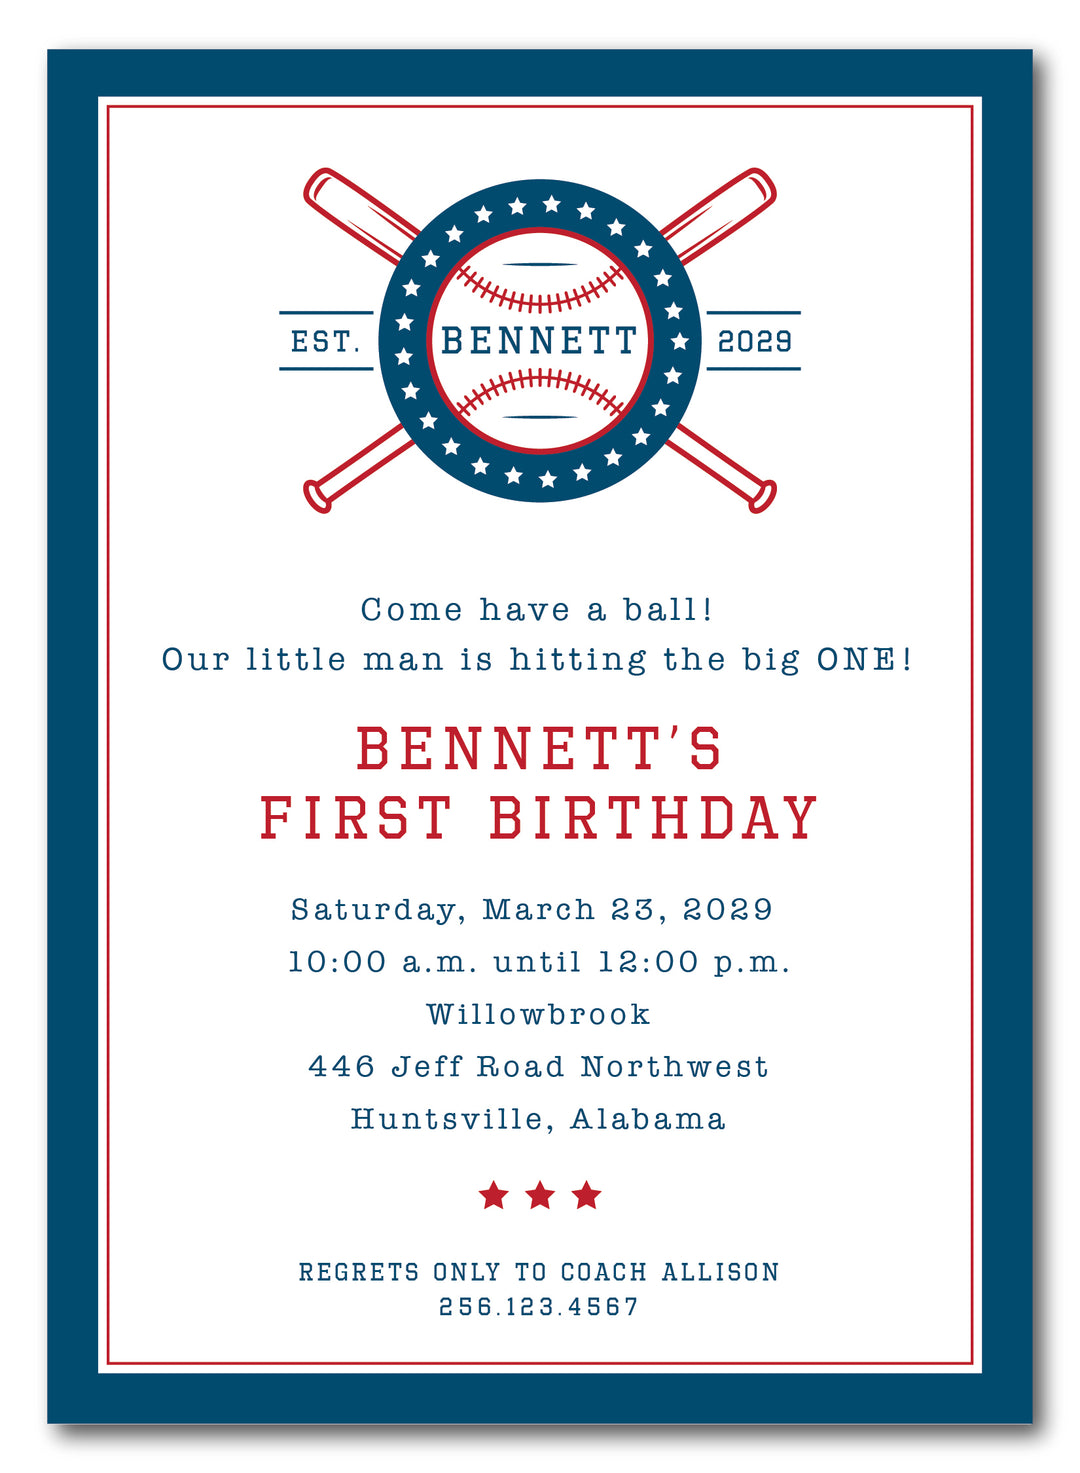 The Baseball Birthday Party Invitation